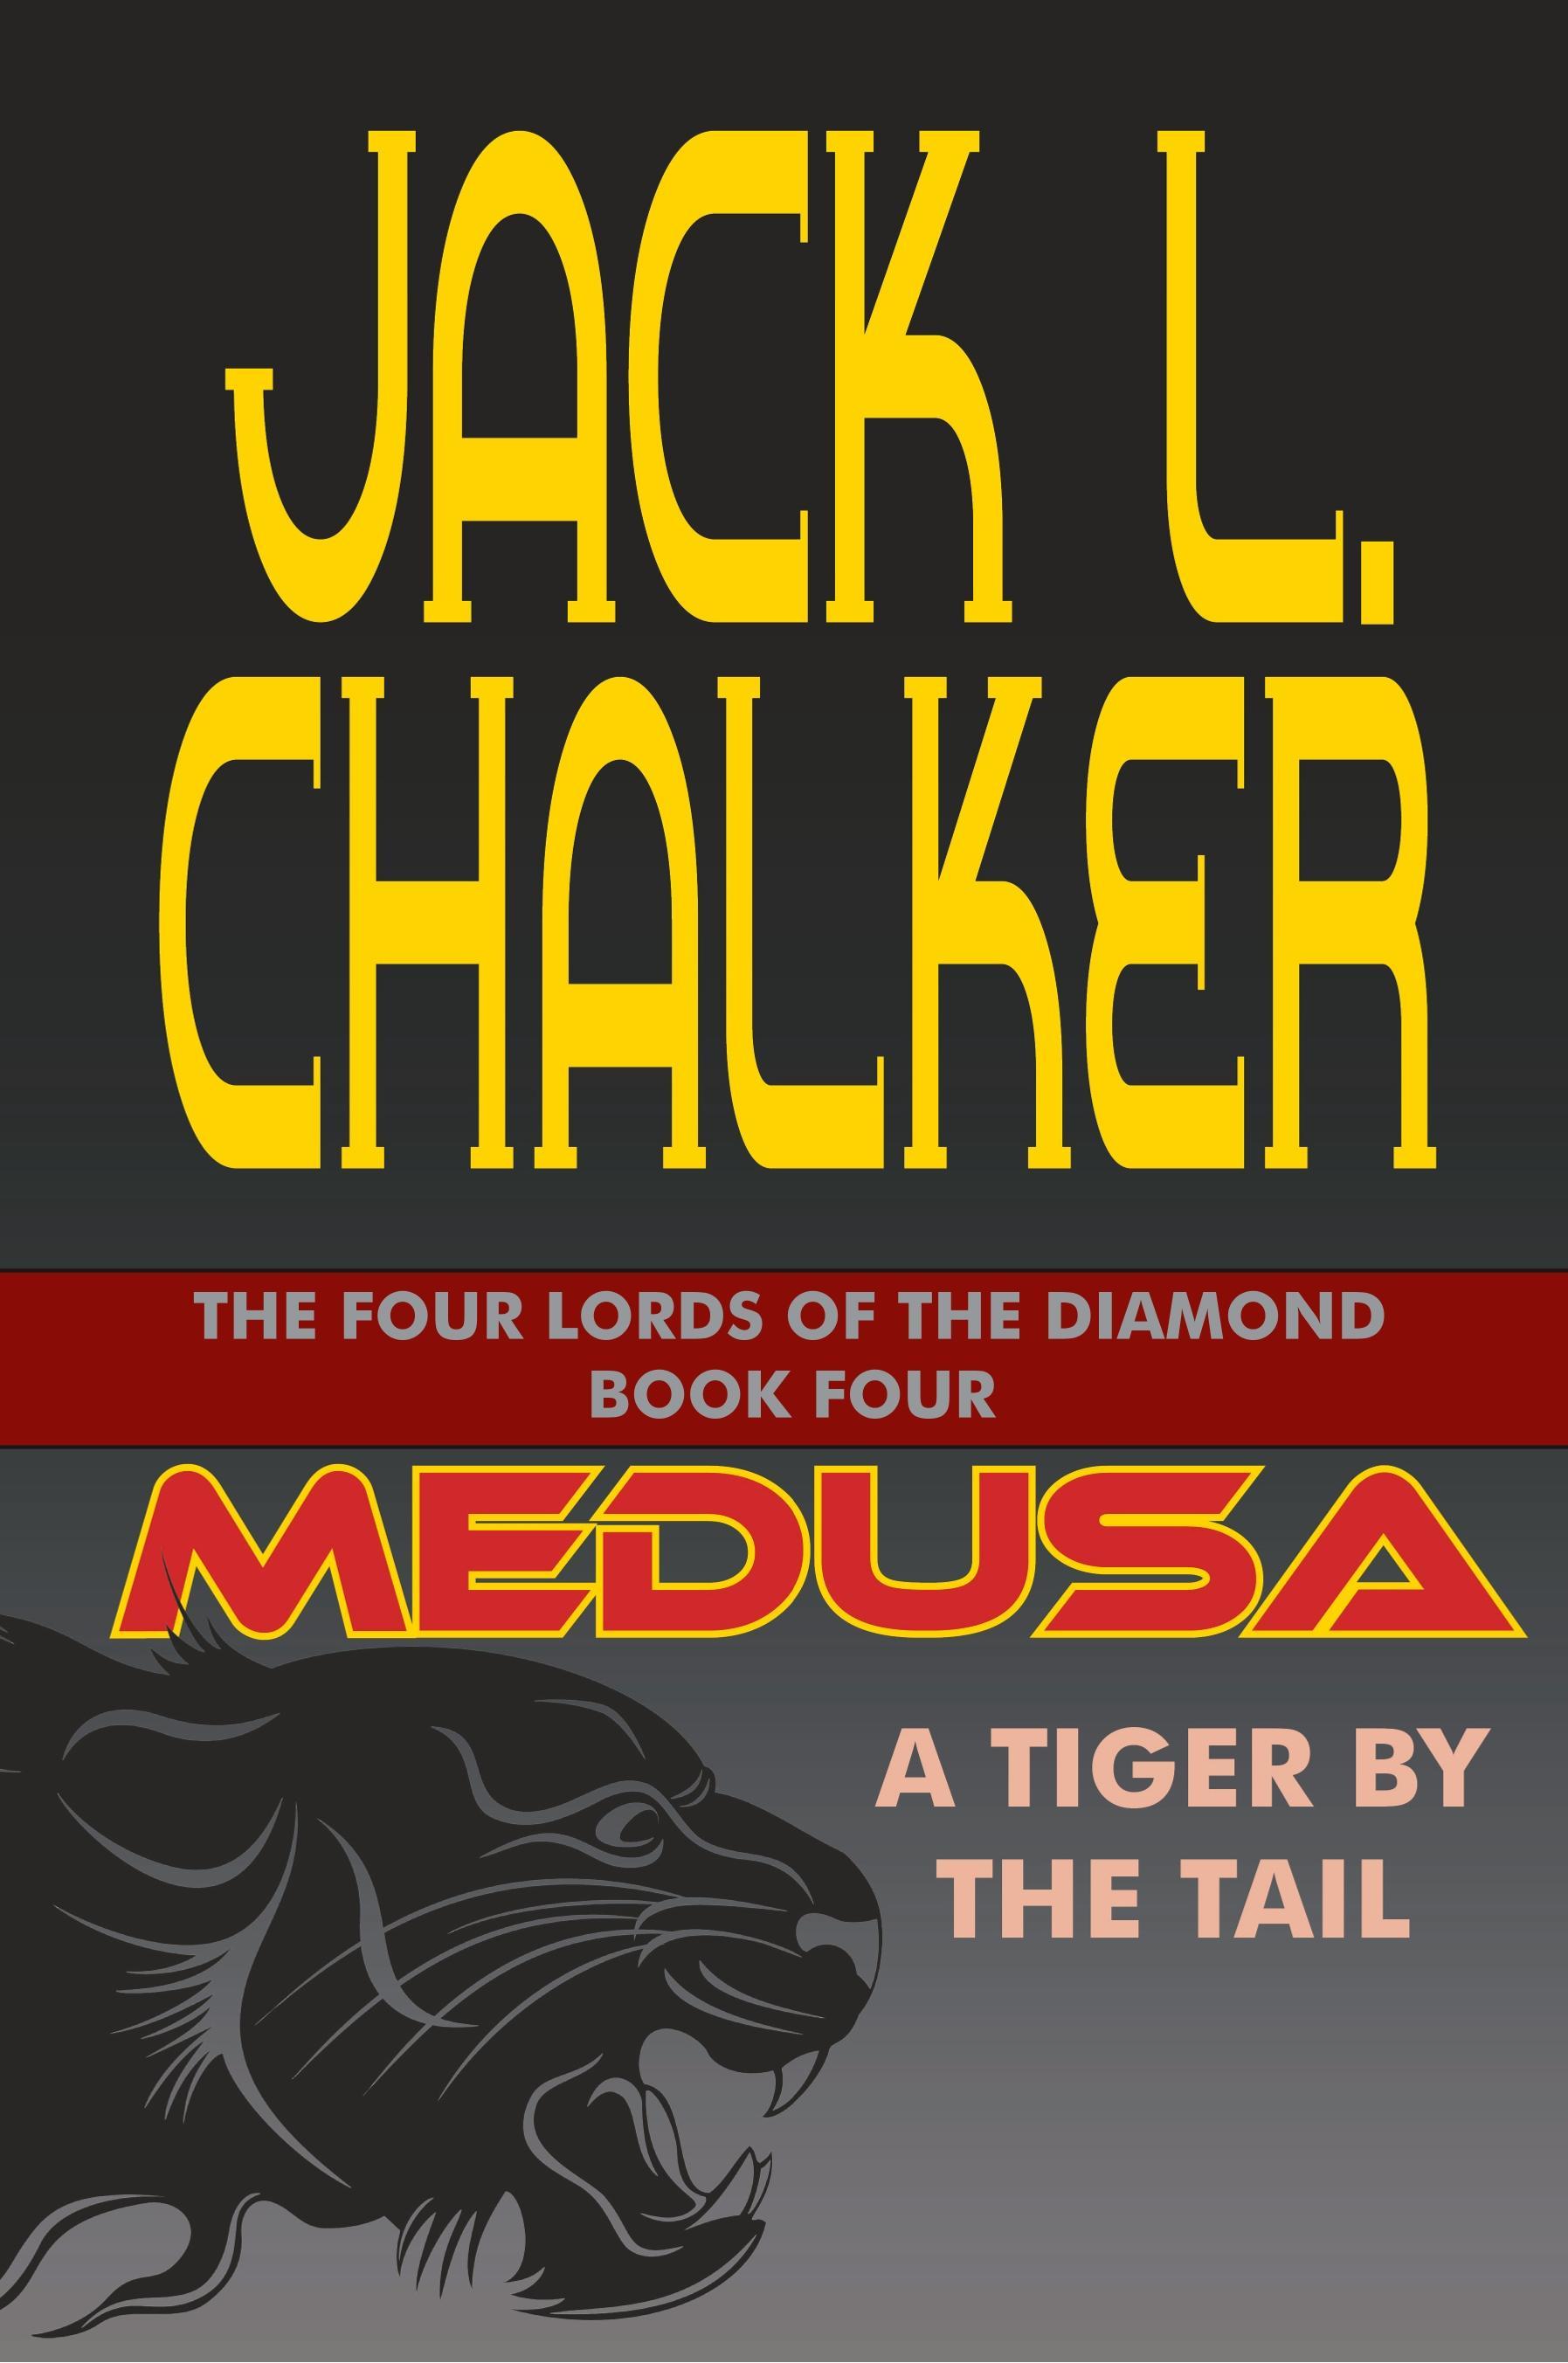 Medusa - Chalker, Jack L.